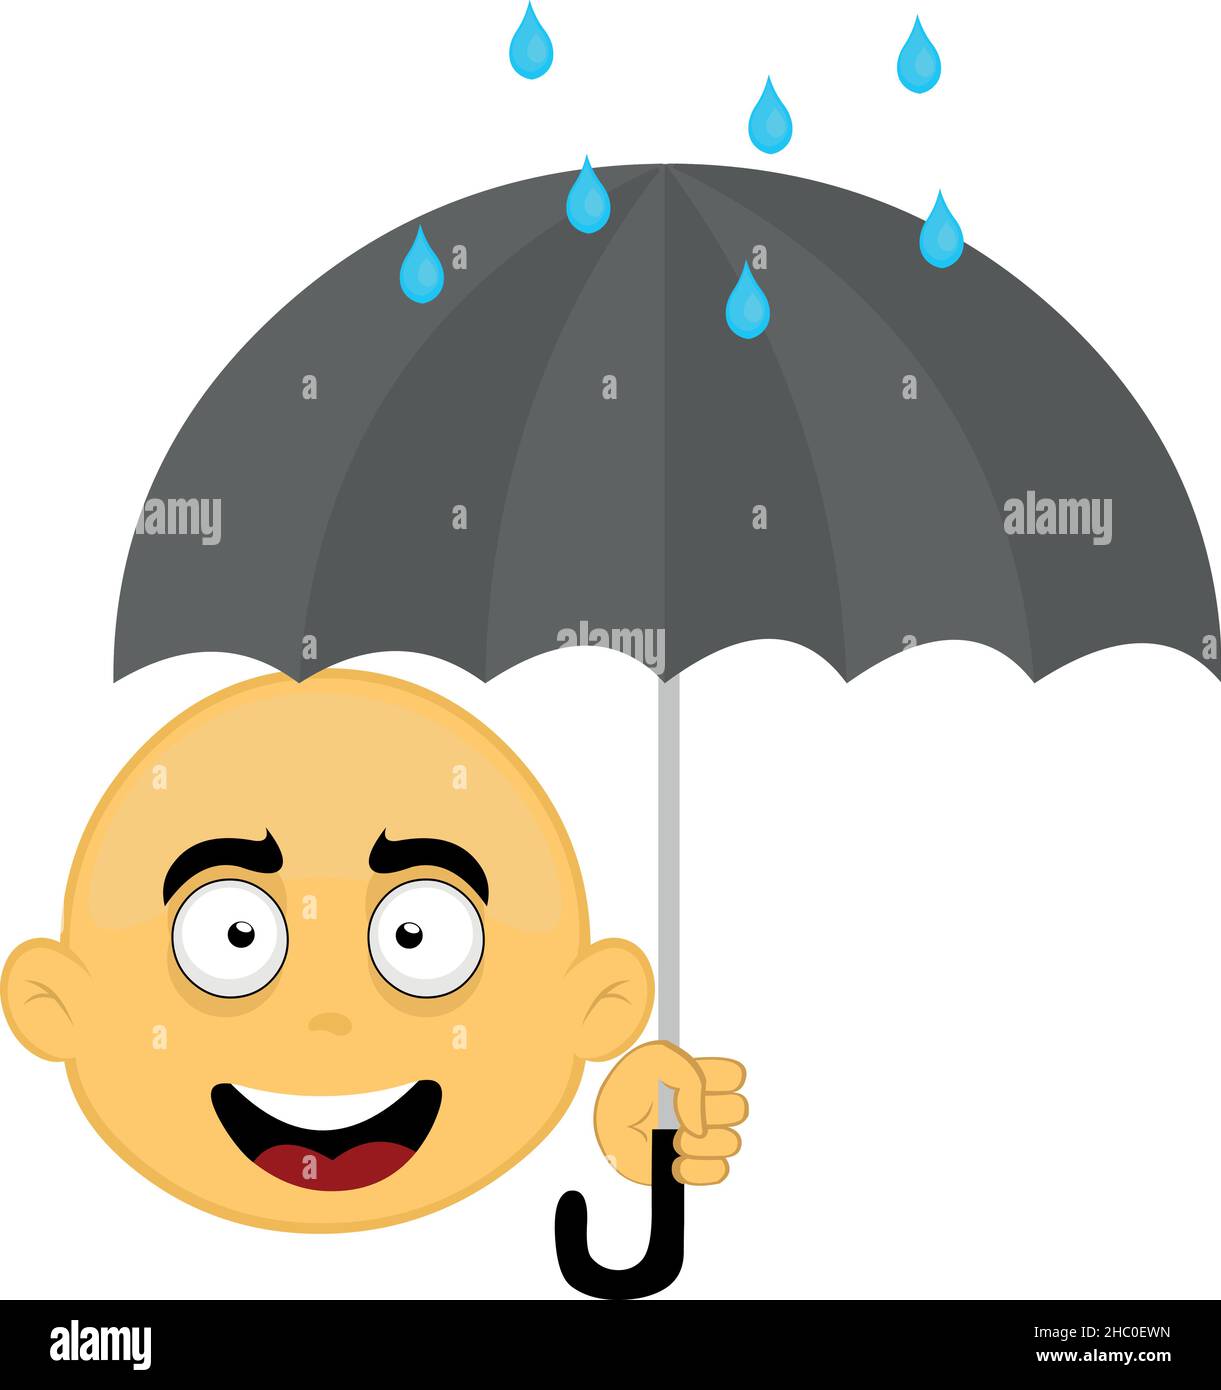 Illustration vectorielle du visage d'un personnage de dessin animé jaune et chauve, tenant un parapluie avec des gouttes de pluie Illustration de Vecteur